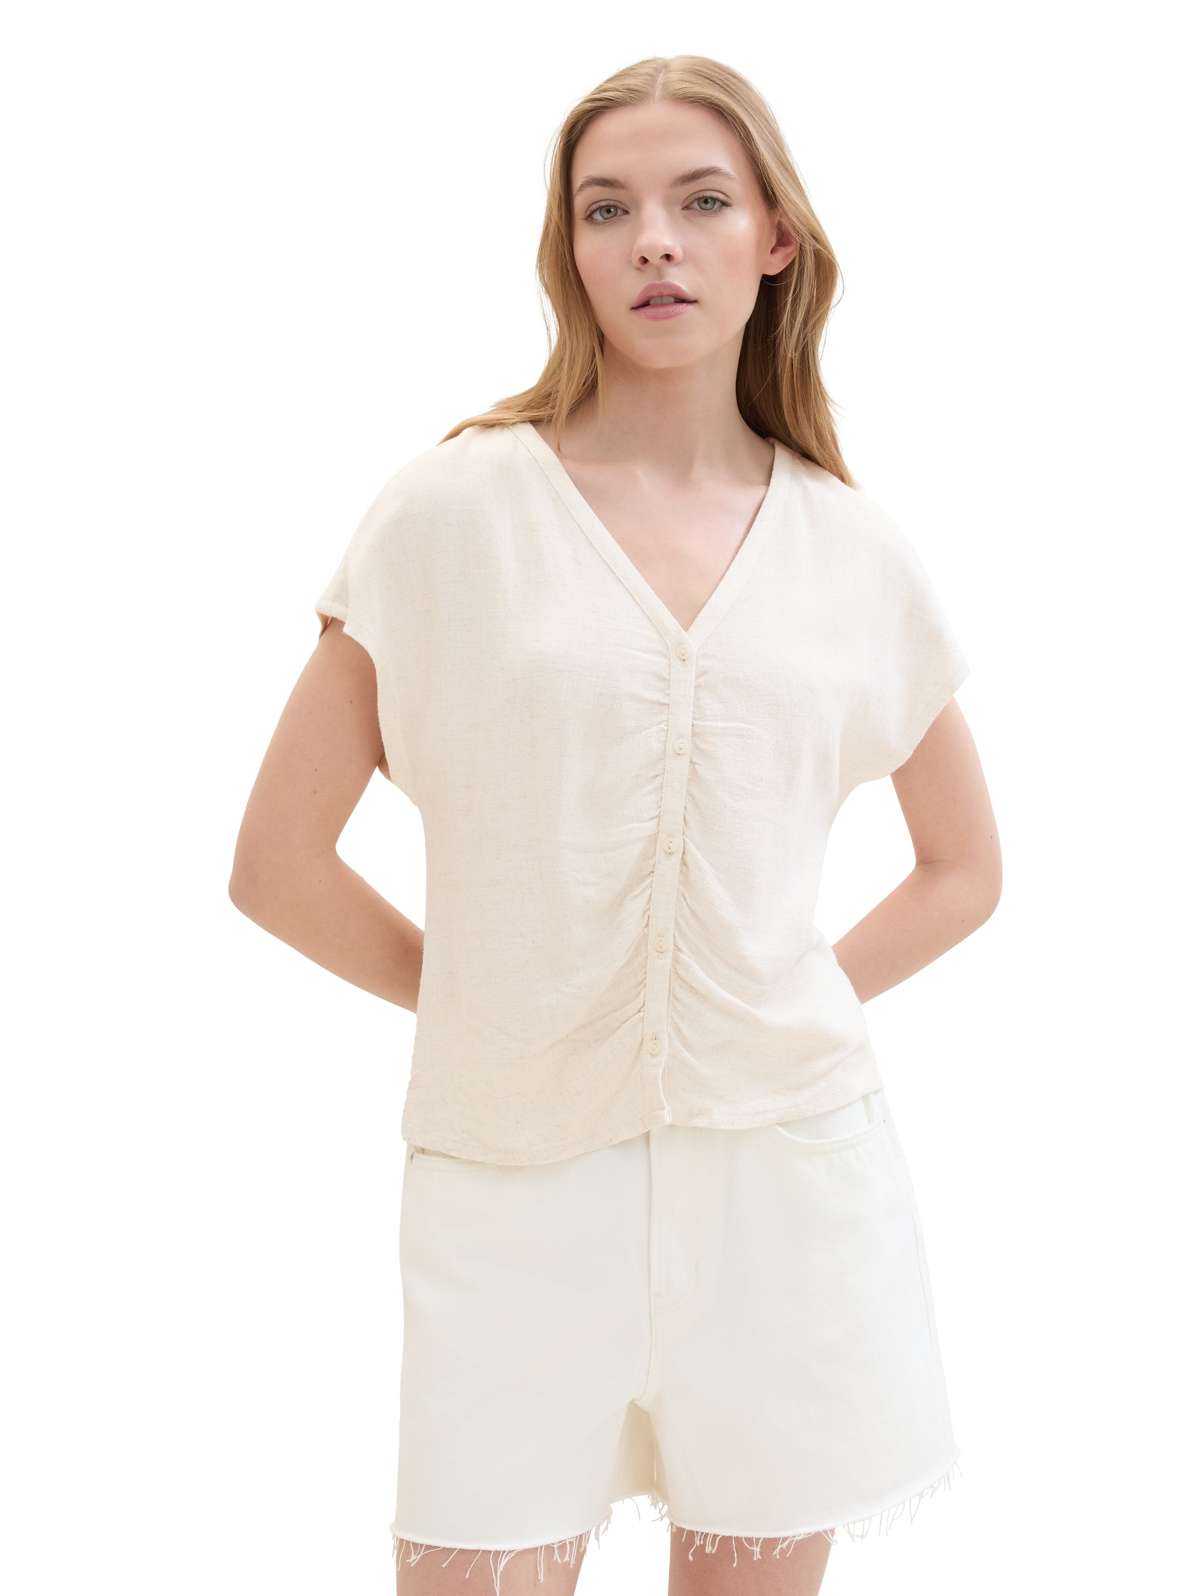 Блузка с короткими рукавами, планкой на пуговицах и рюшами.